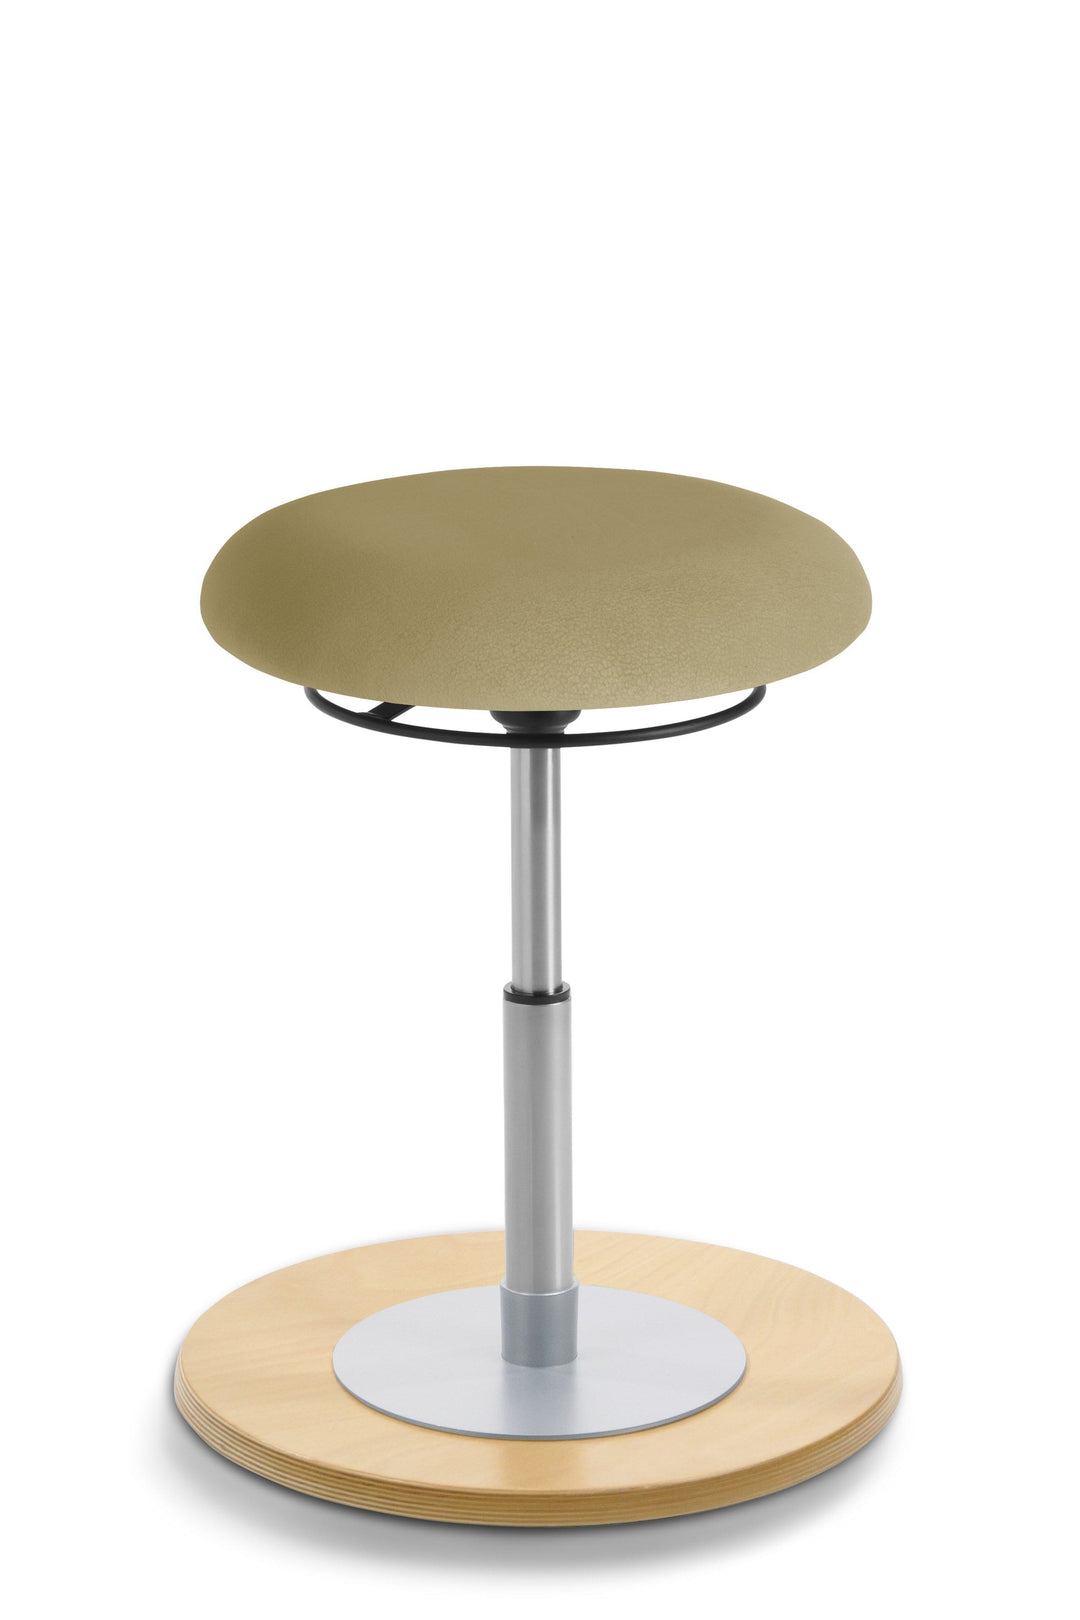 Mayer MyErgosit Taboret Krzesło Stołek balansujący okrągły 39-52cm podstawa sklejka naturalna 1151 N - 4kidspoint.pl